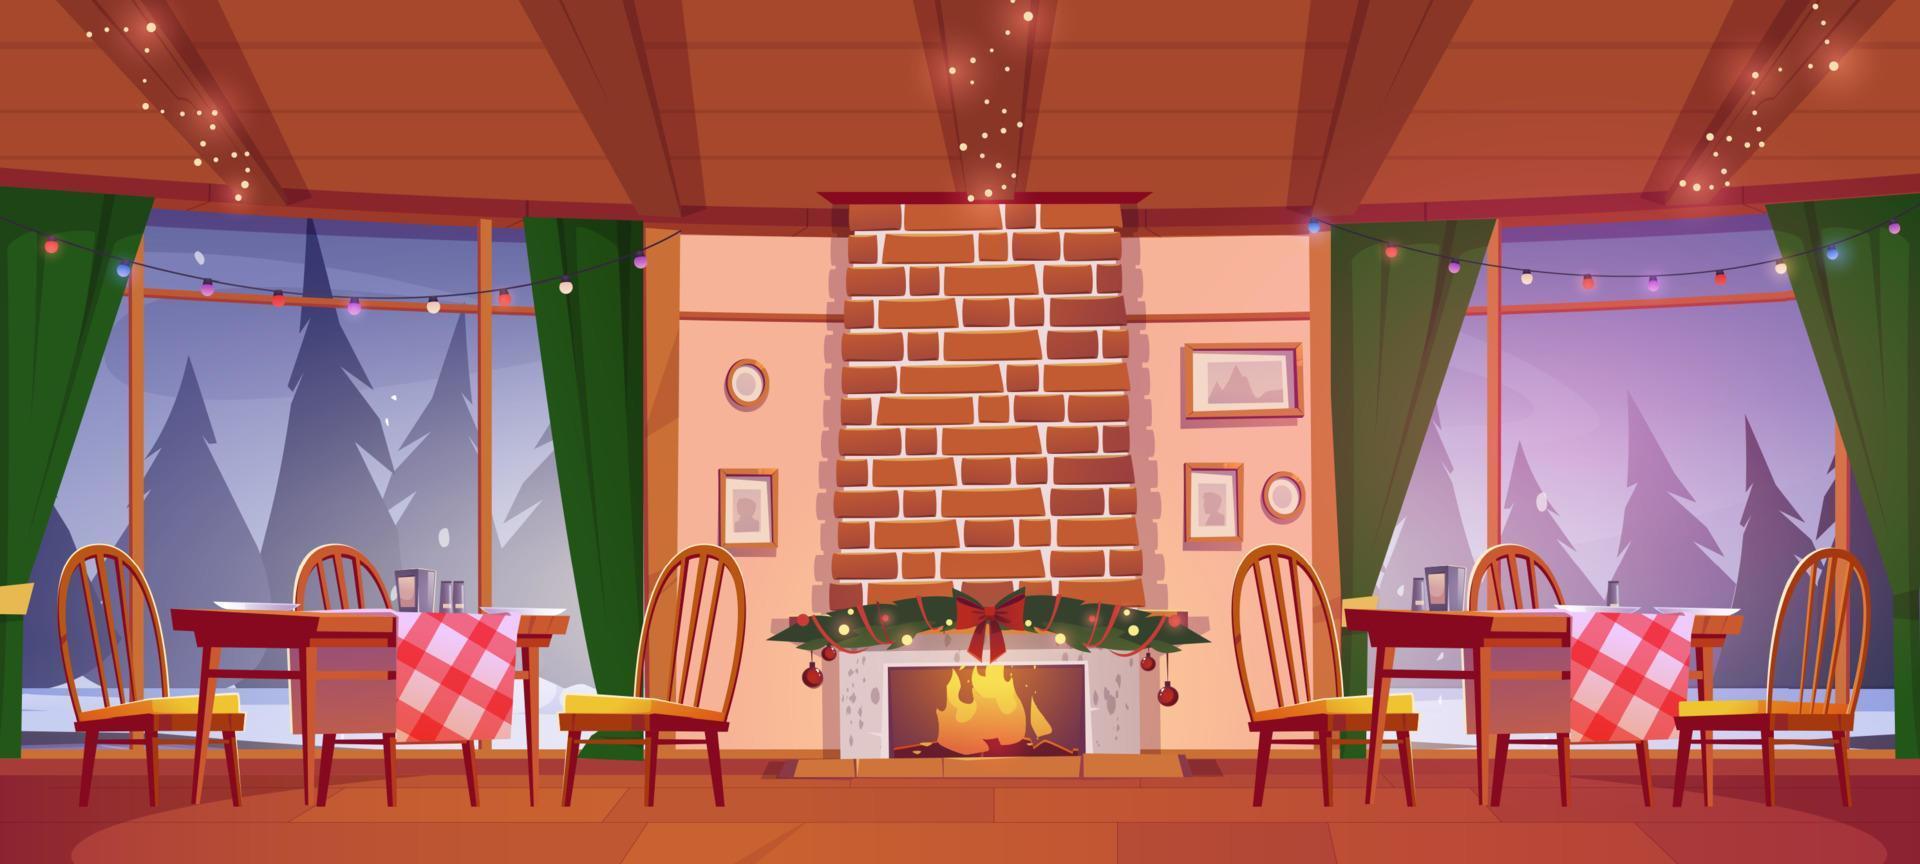 pizzería o acogedora cafetería familiar con decoración navideña vector